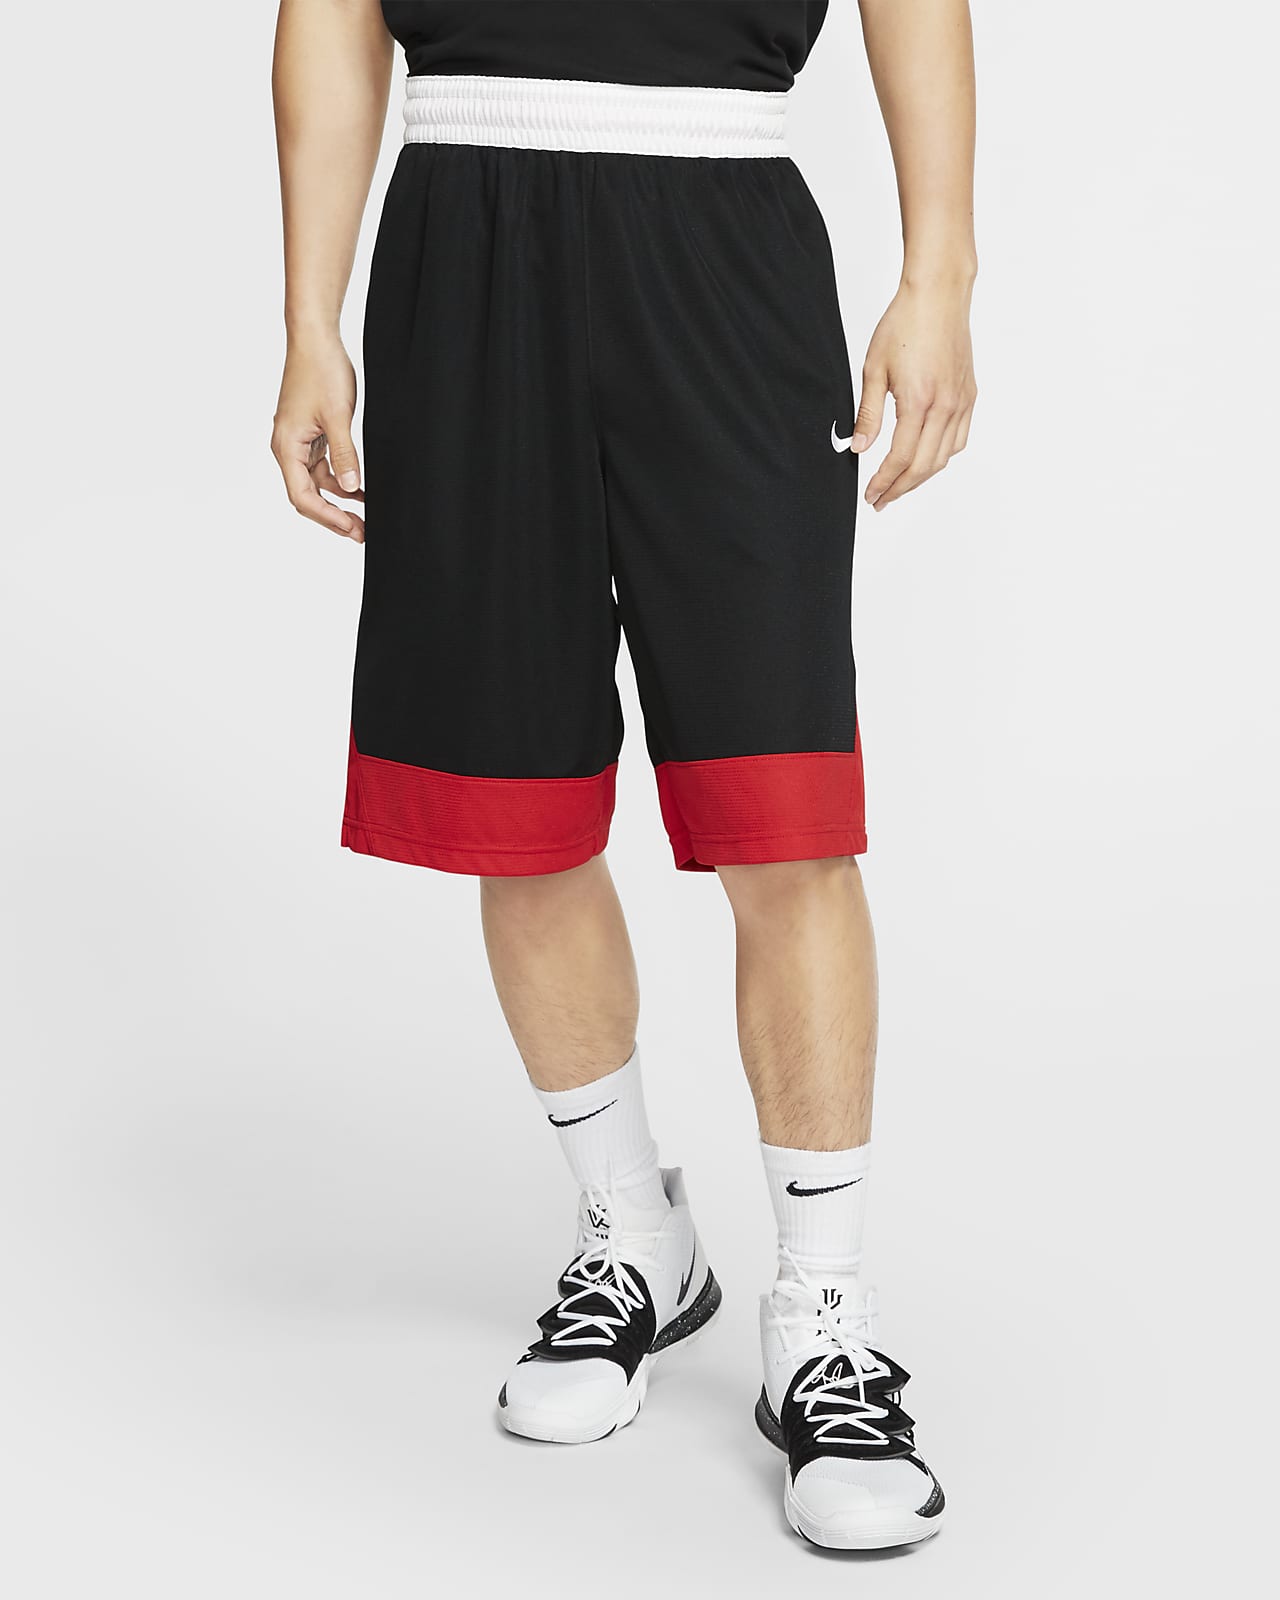 Men Basketball Shorts Training Pocket Pants Fitness Football Running Sportswear 